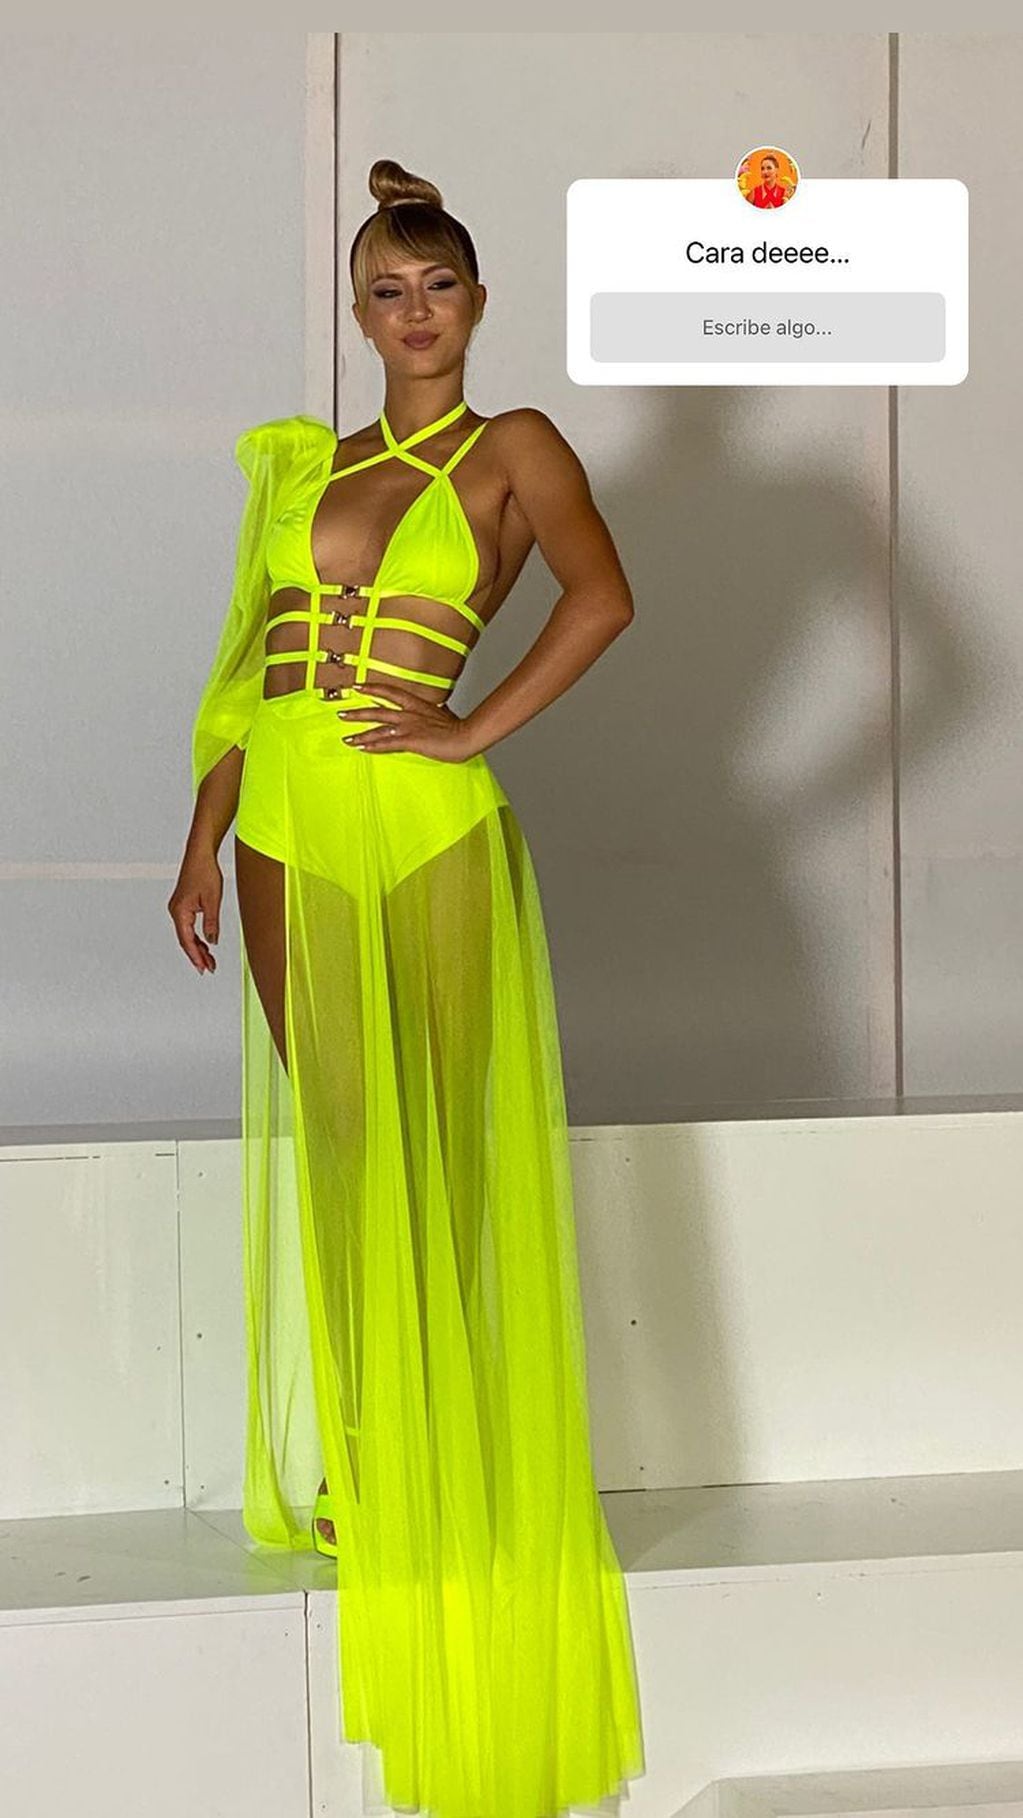 Flor Vigna eligió un color de vestido que no pasó desapercibido. (Foto: Instagram)